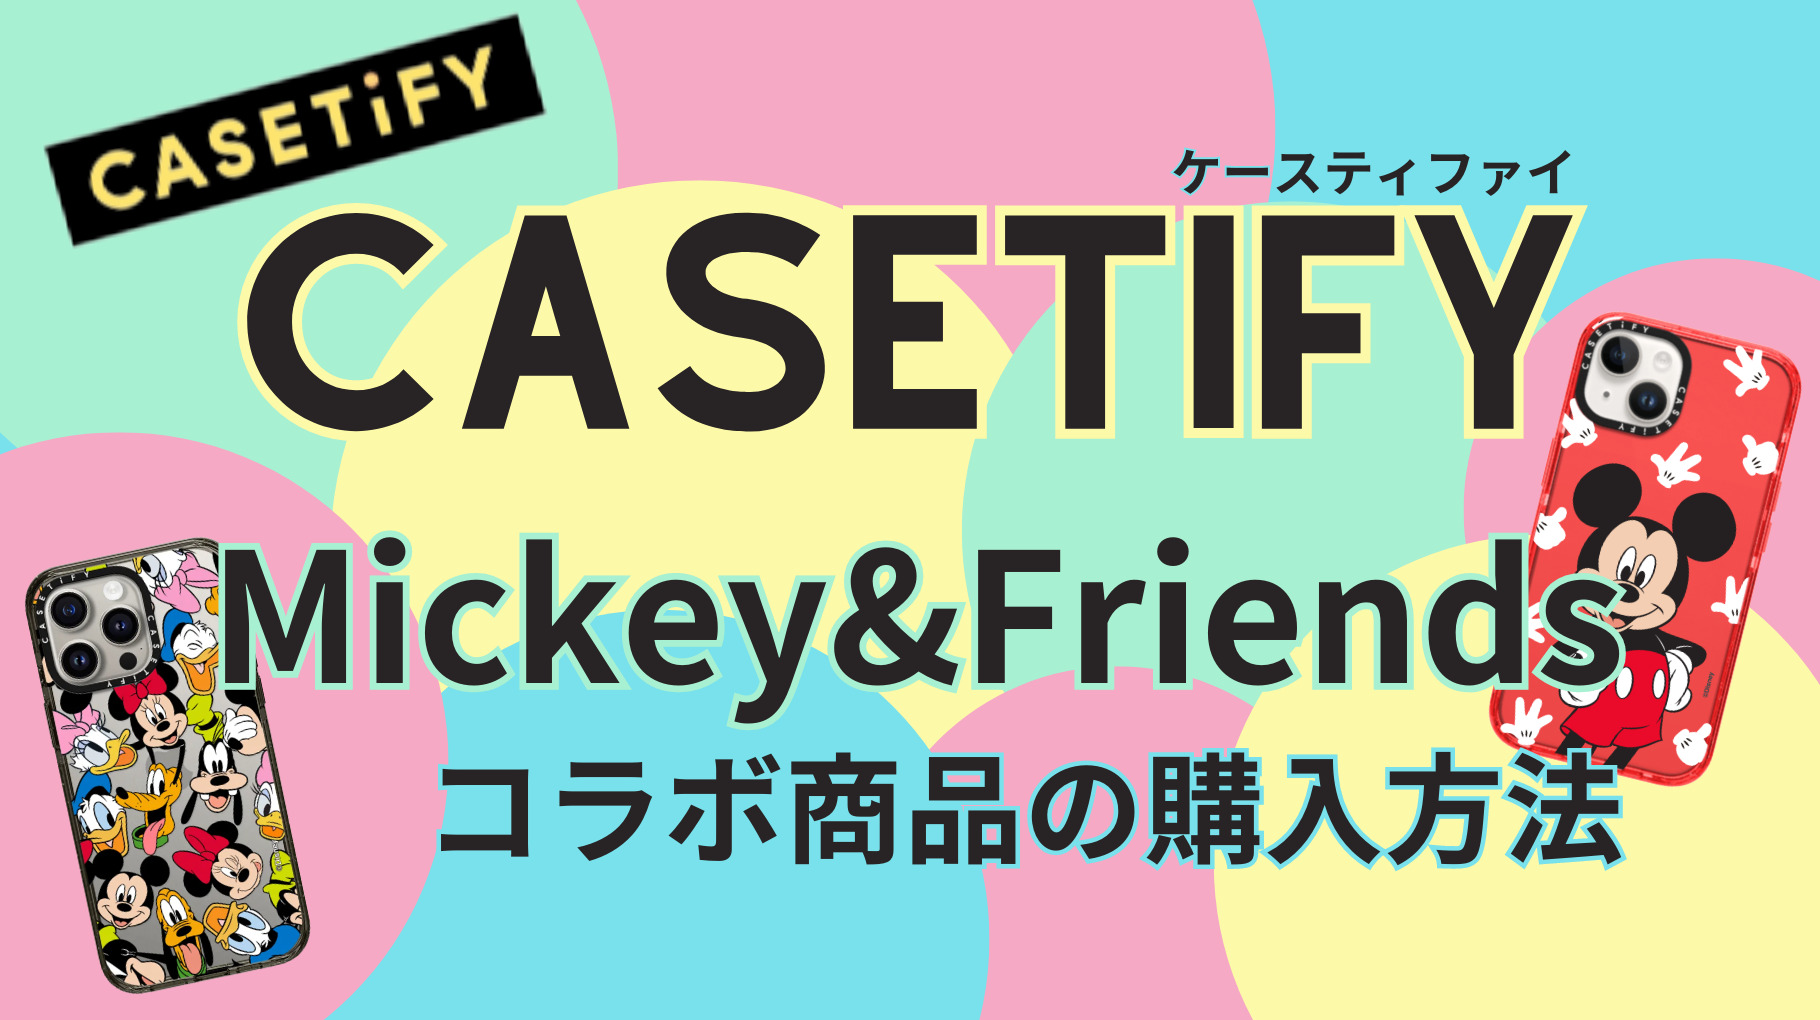 CASETiFY×Mickey&Friends アイキャッチ